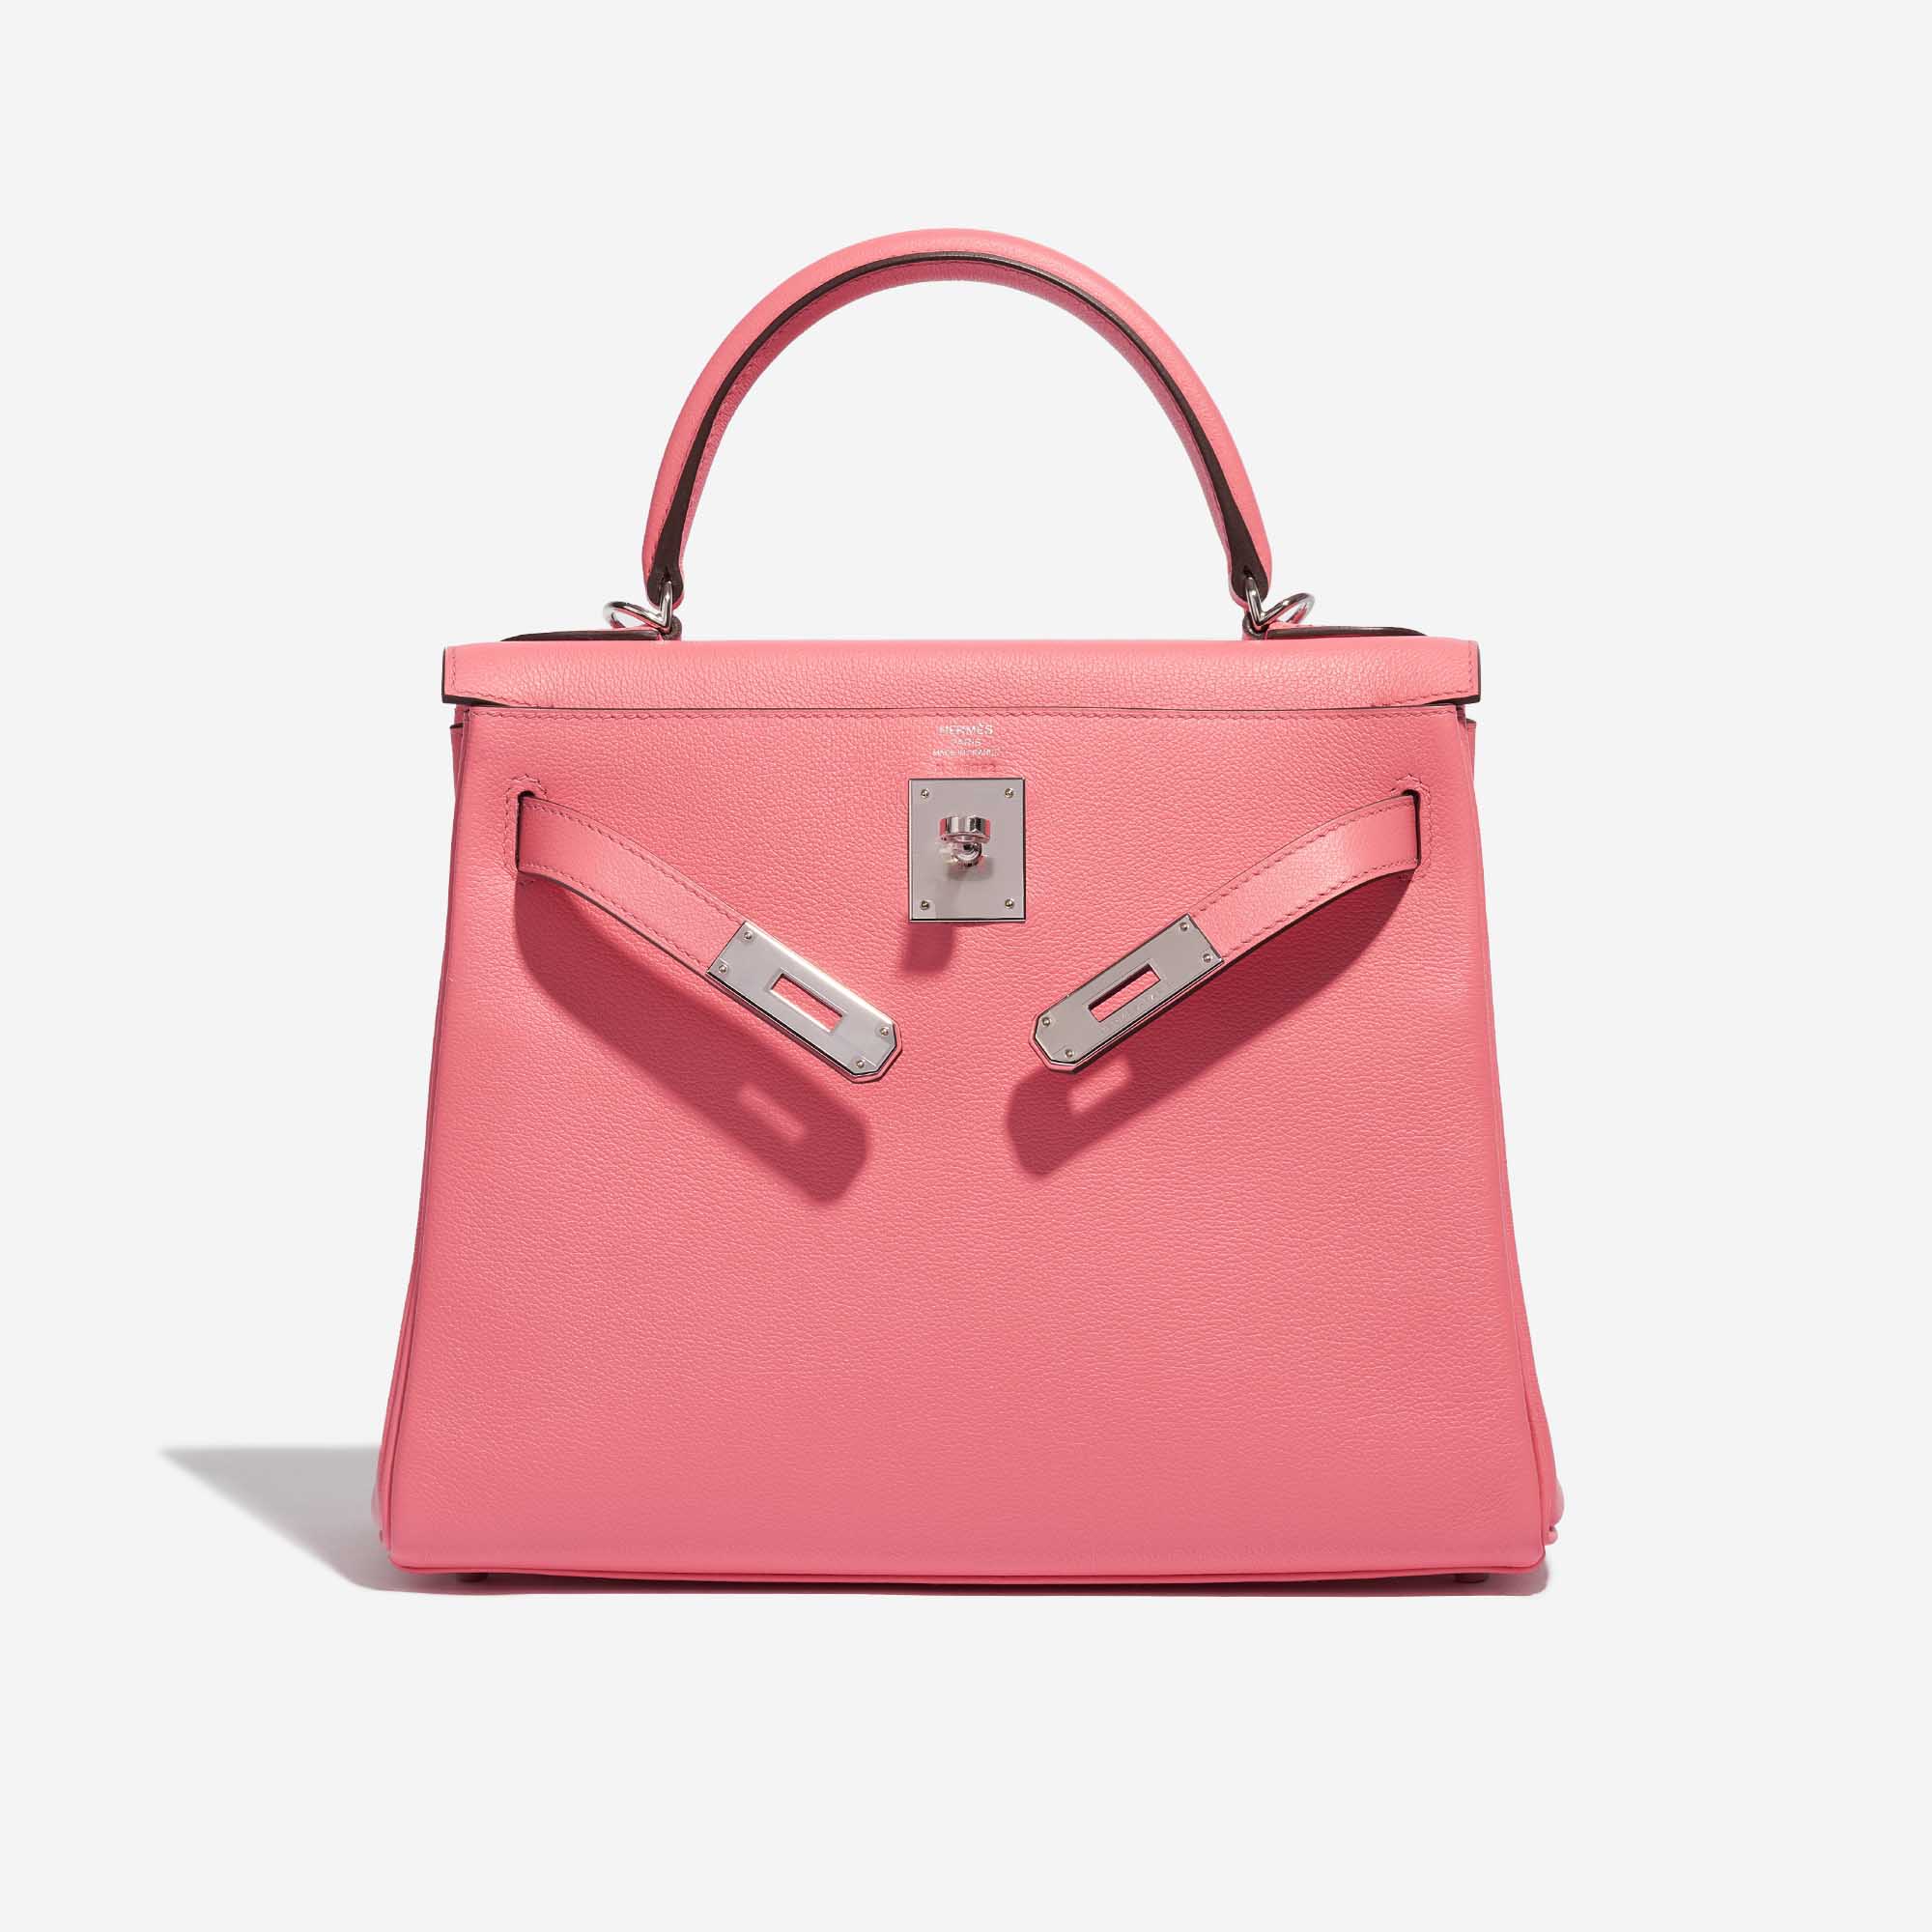 Sac Hermès Kelly 28 Verso Evercolor Rose D'Été / Terre Battue Pink, Rose Front Open | Vendez votre sac de créateur sur Saclab.com